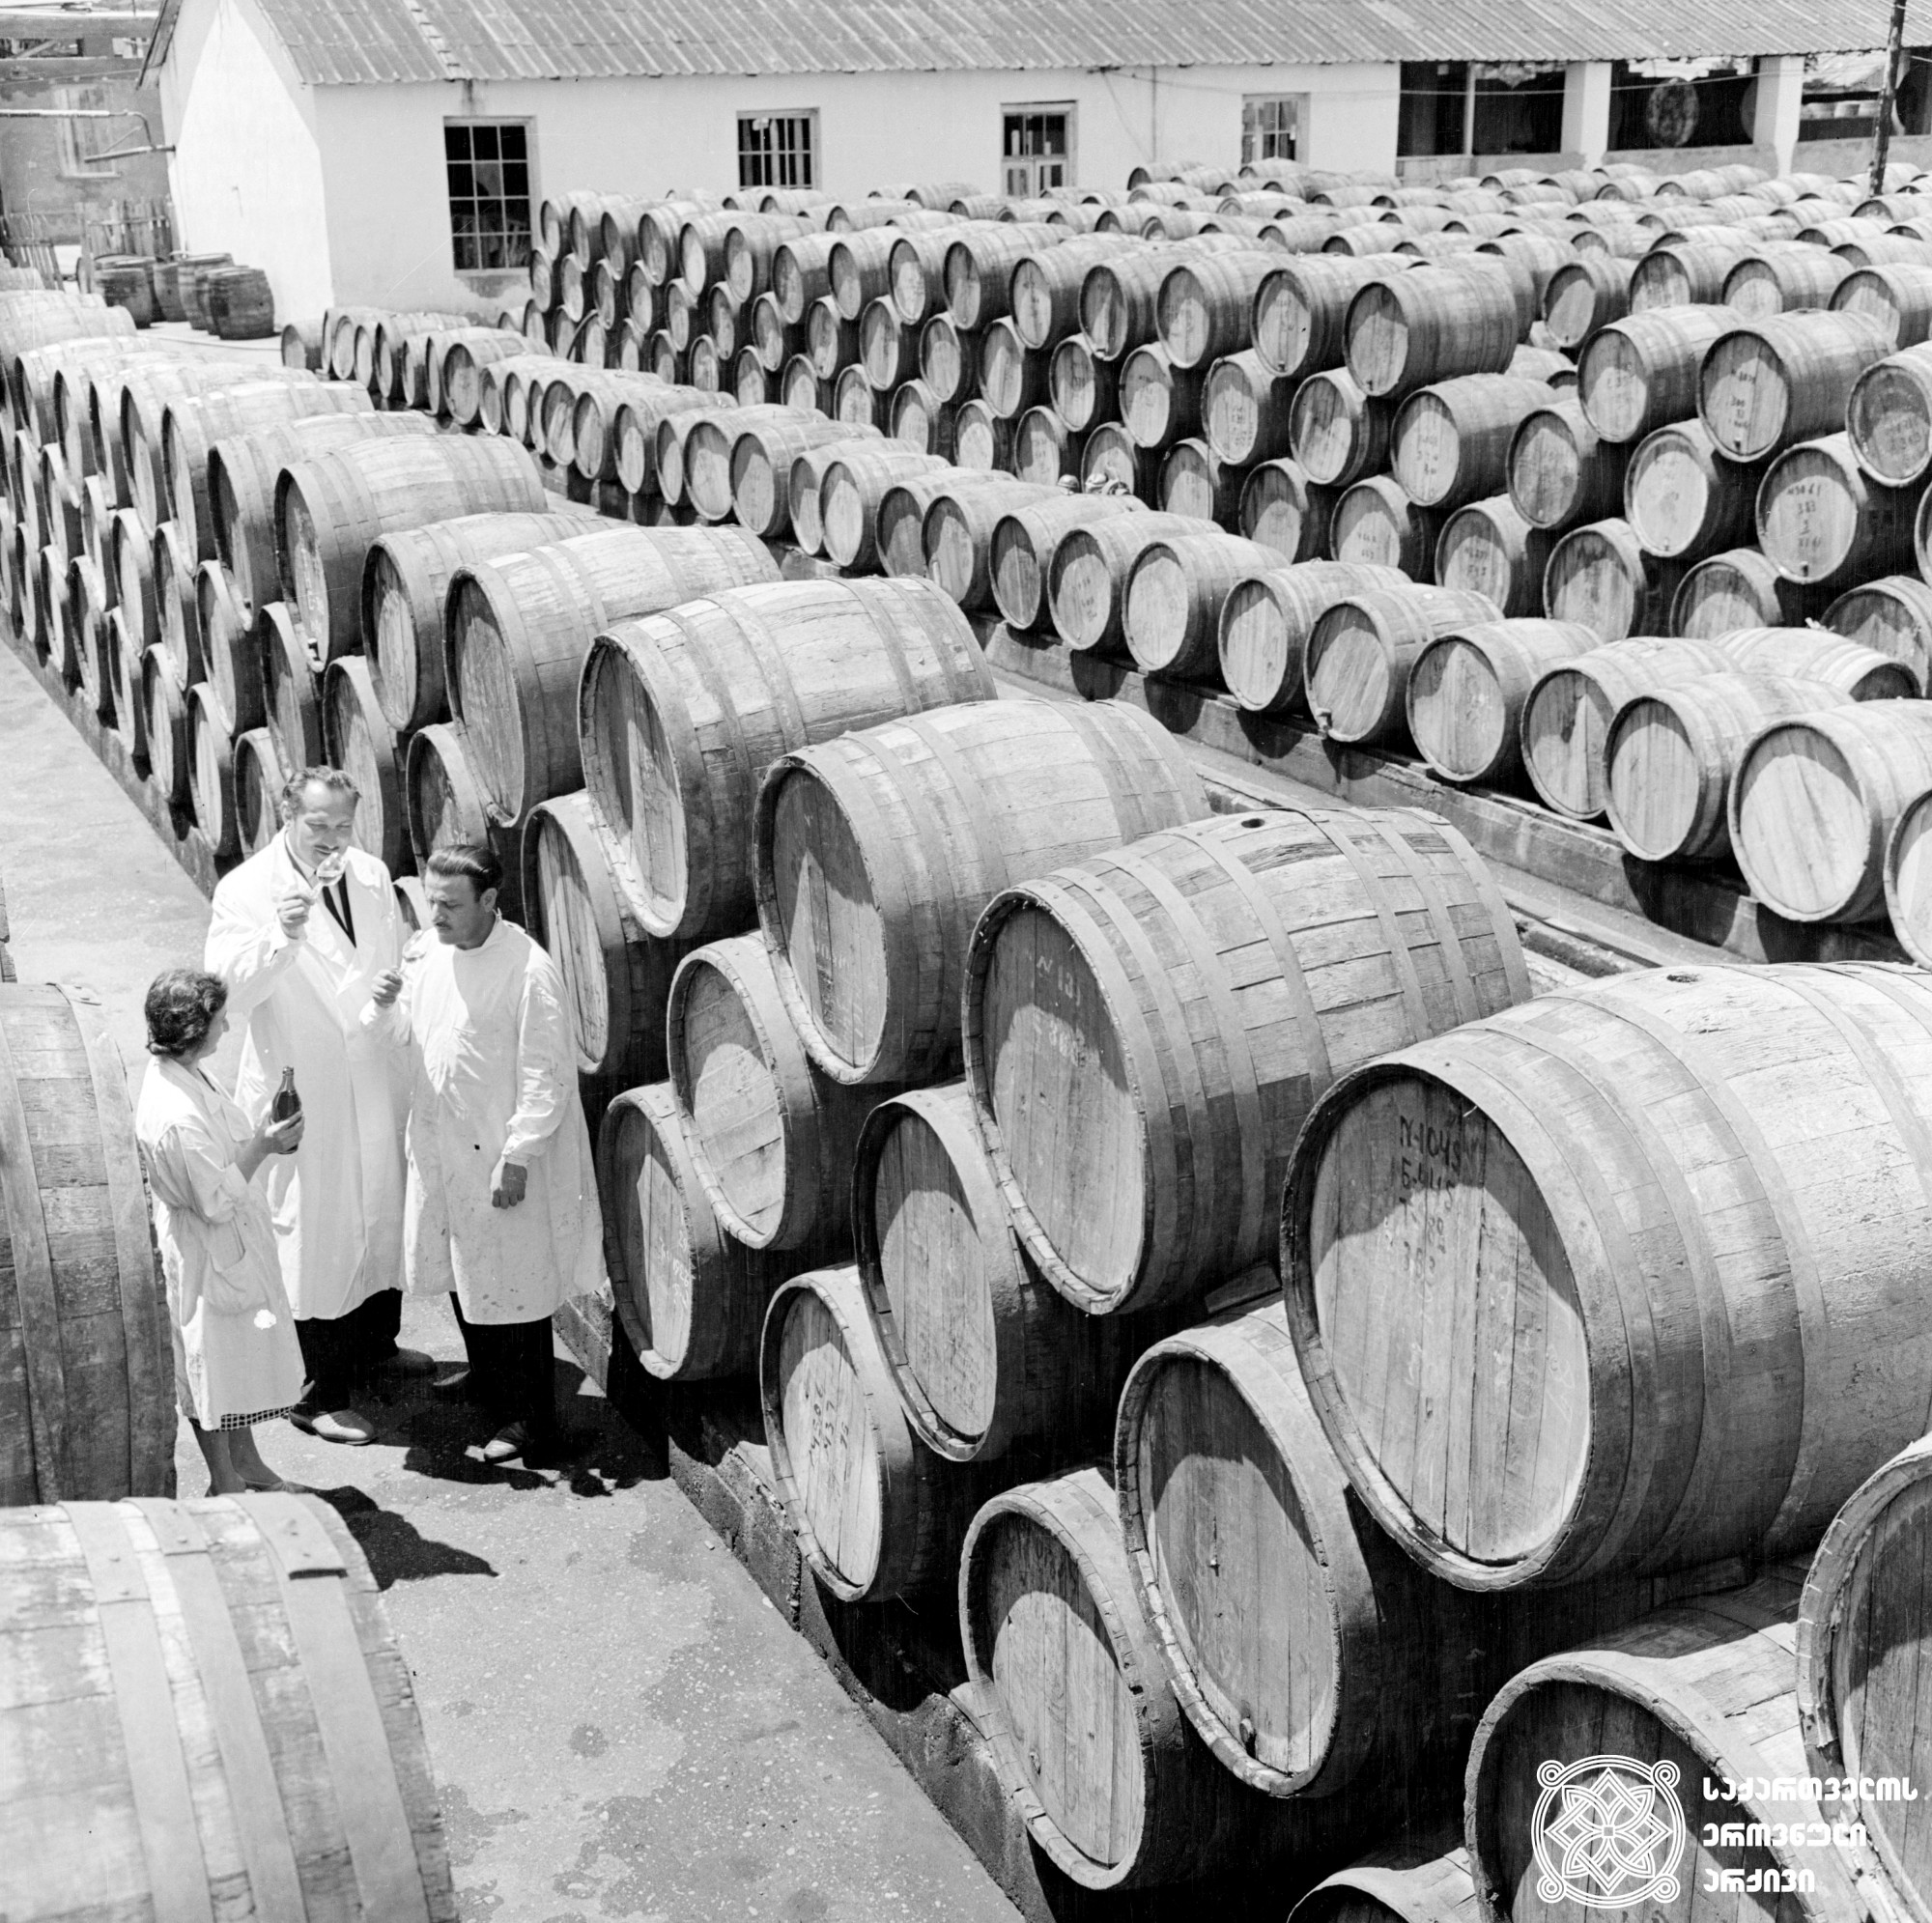 ღვინის ქარხანა<br> 
ფოტო: ბონდო დადვაძე<br> 
გურჯაანი, 1972 წელი <br> 
Wine factory<br>
Photo by Bondo Dadvadze
Gurjaani, 1972 <br>